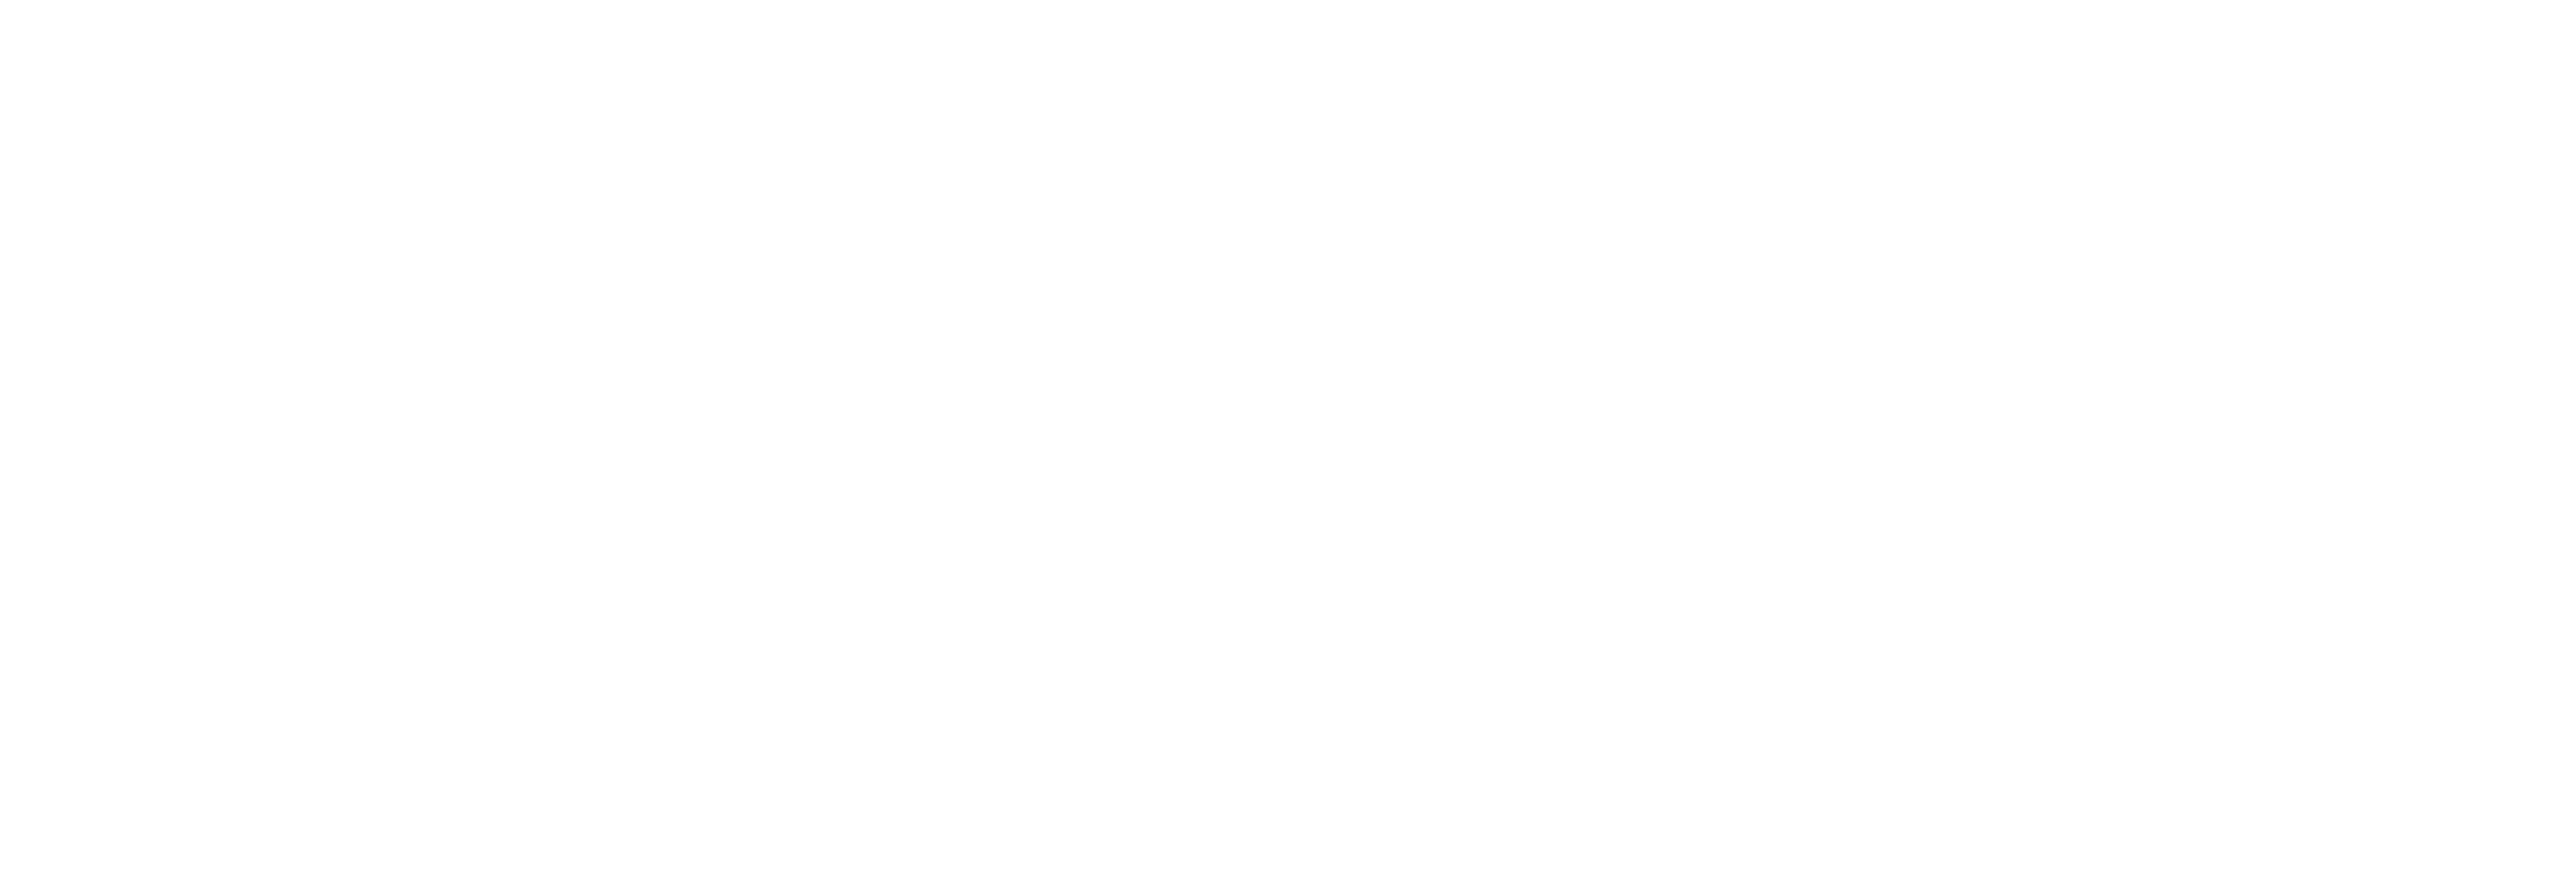 AniCura Doctor Castelo Centro Veterinario logo